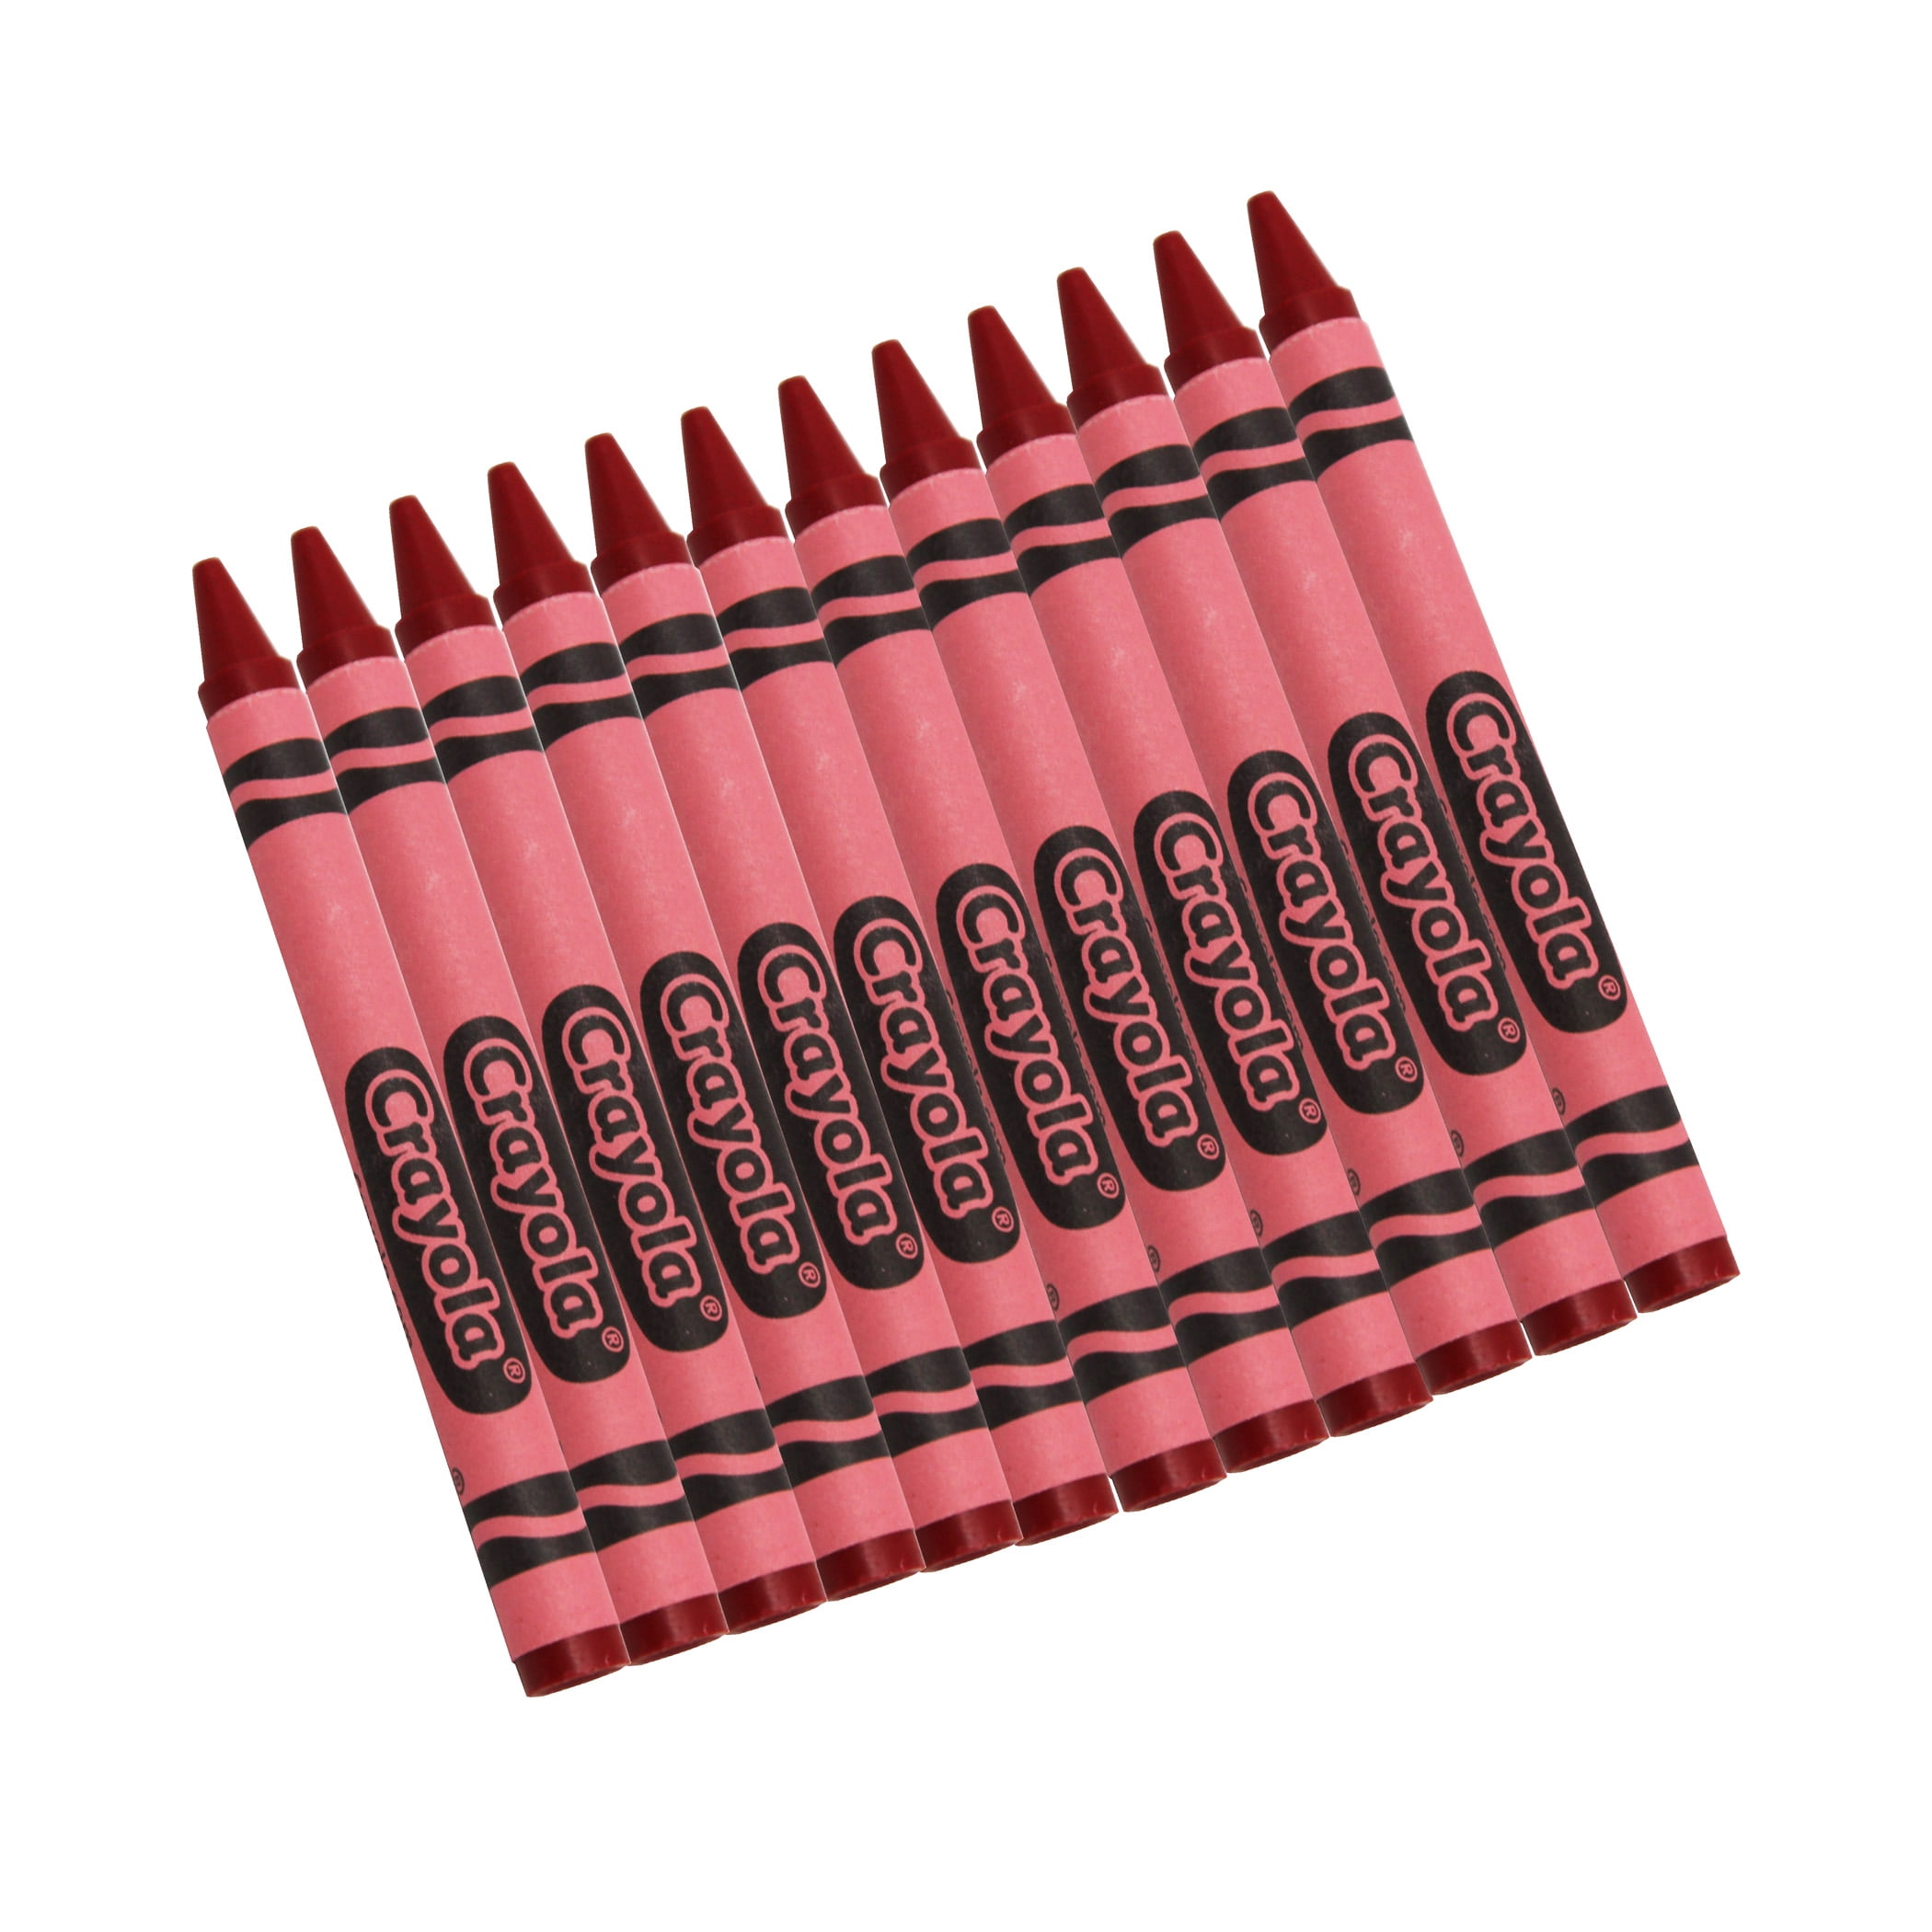  Crayola Bulk Crayons - Red - 12 / Box : Arts, Crafts & Sewing